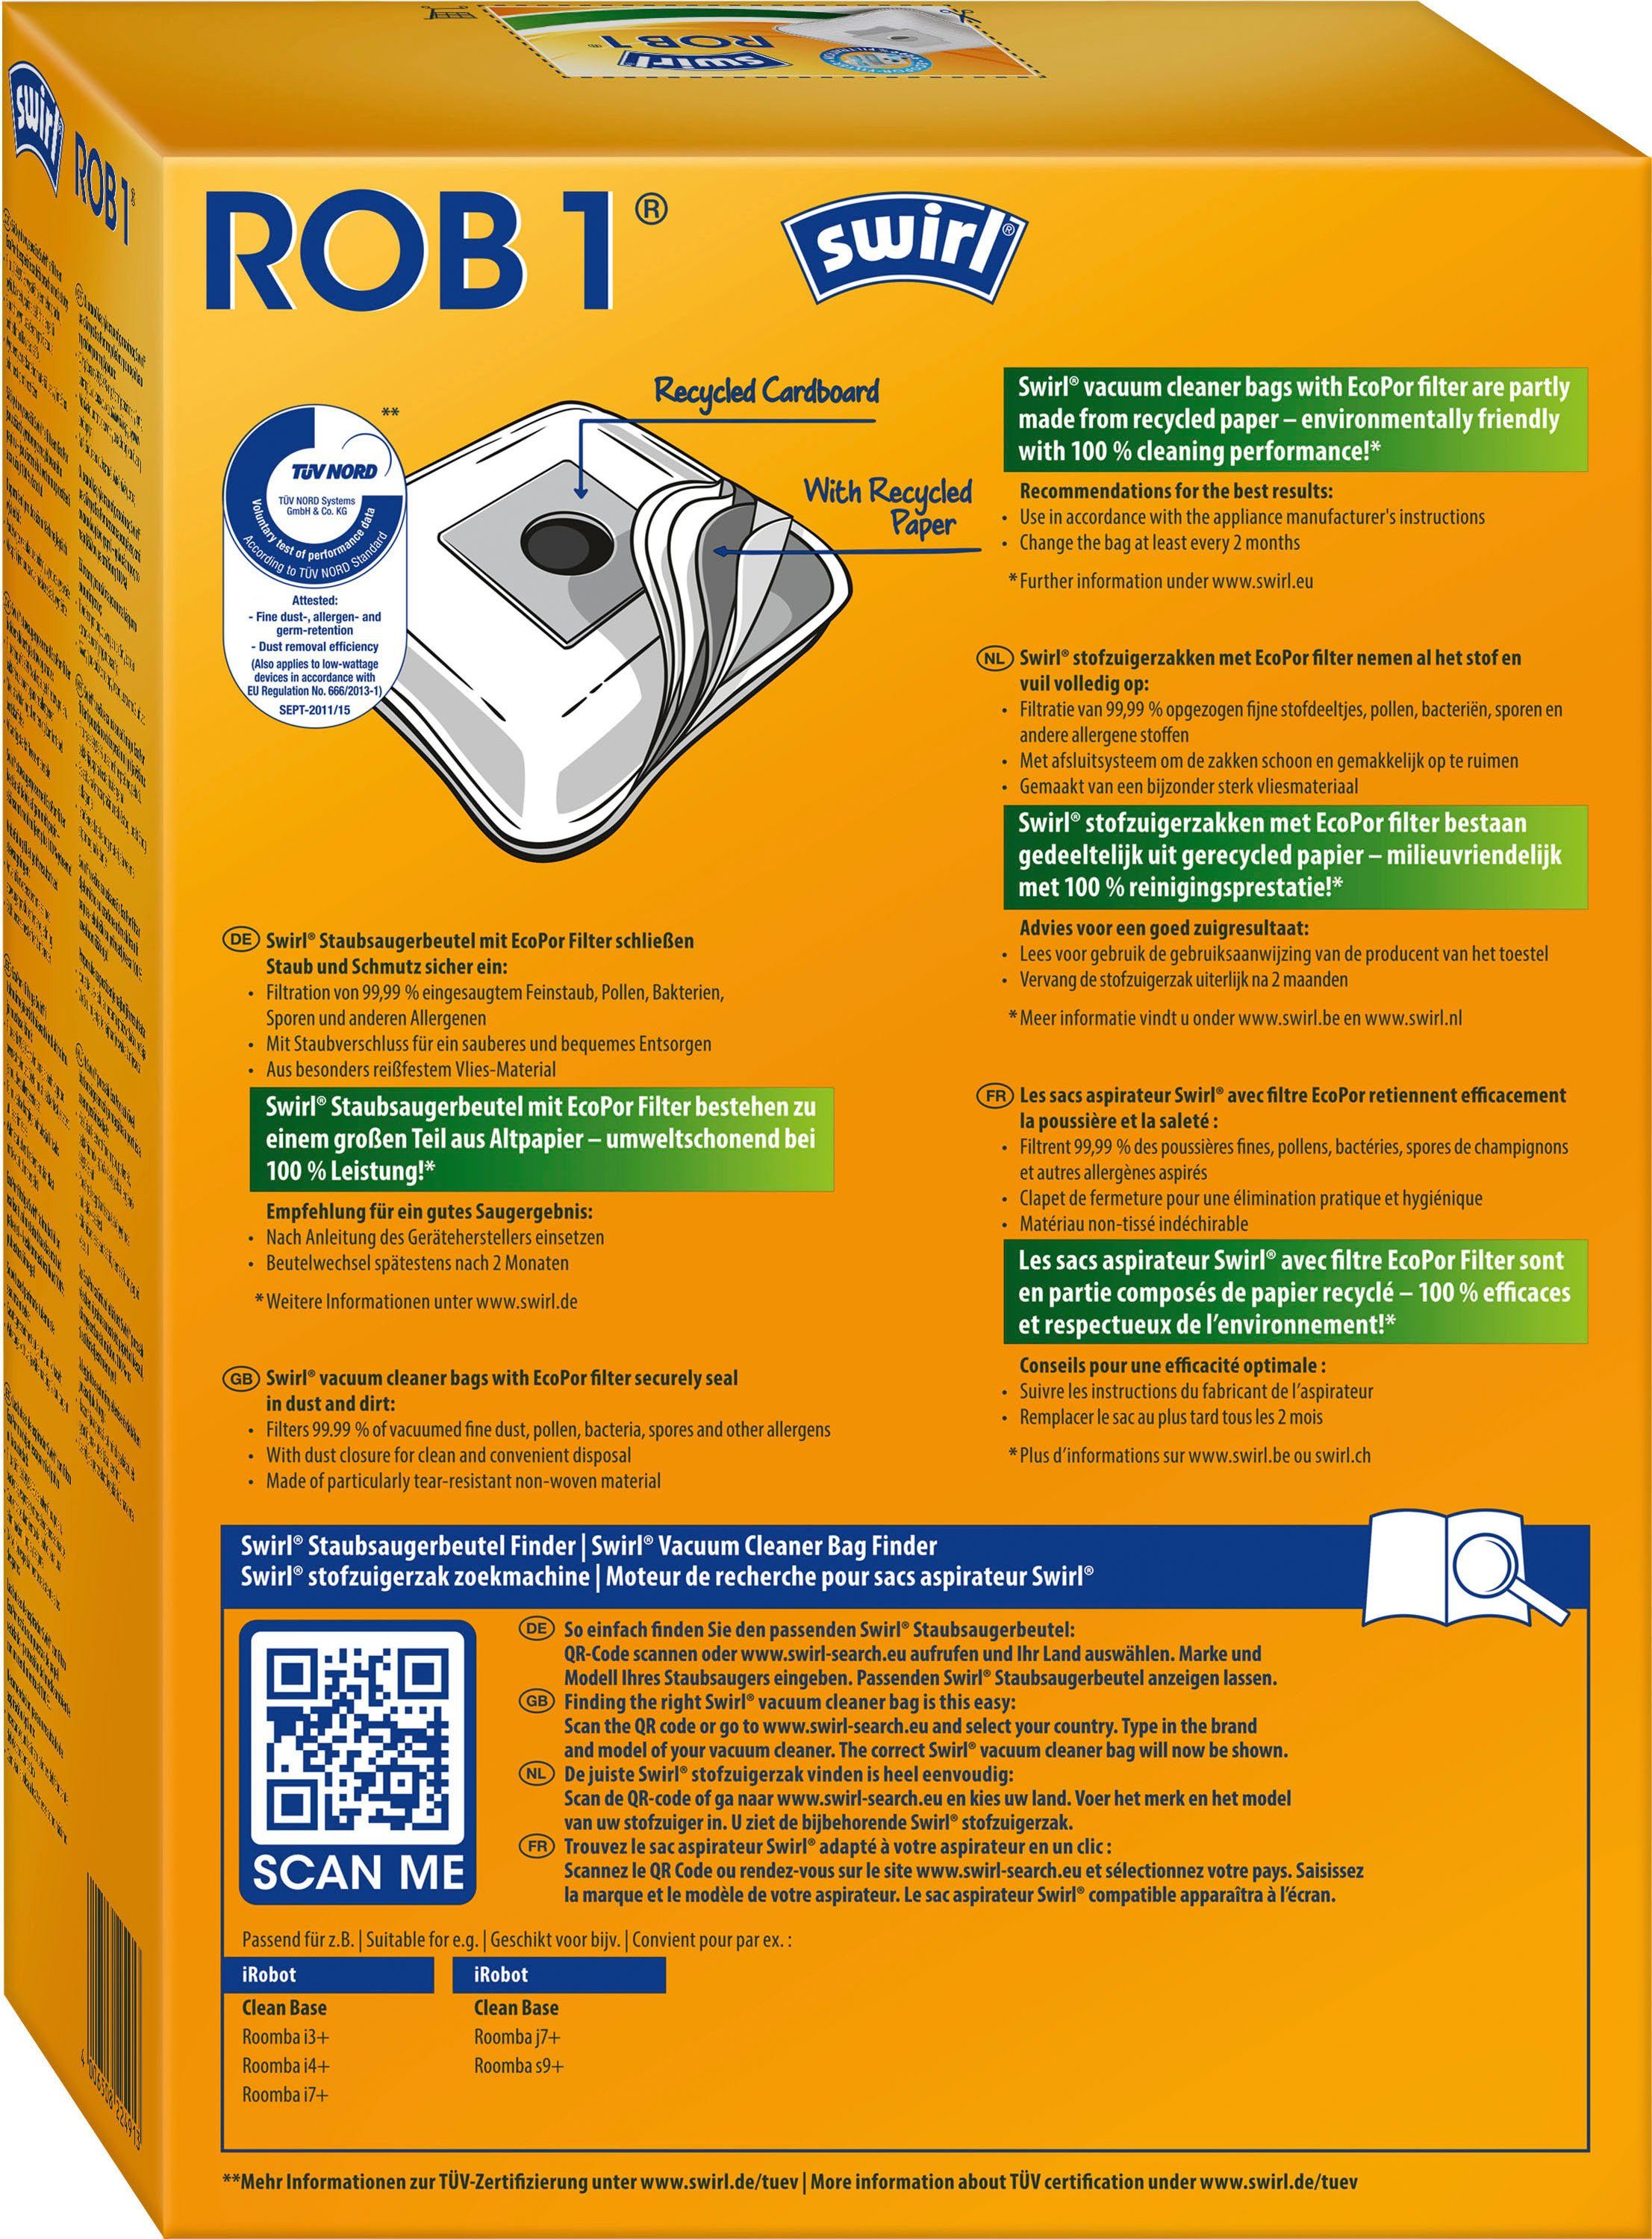 Swirl Staubsaugerbeutel ROB 1®, Automatische iRobot Base Clean für Absaugstation, 4er-Pack